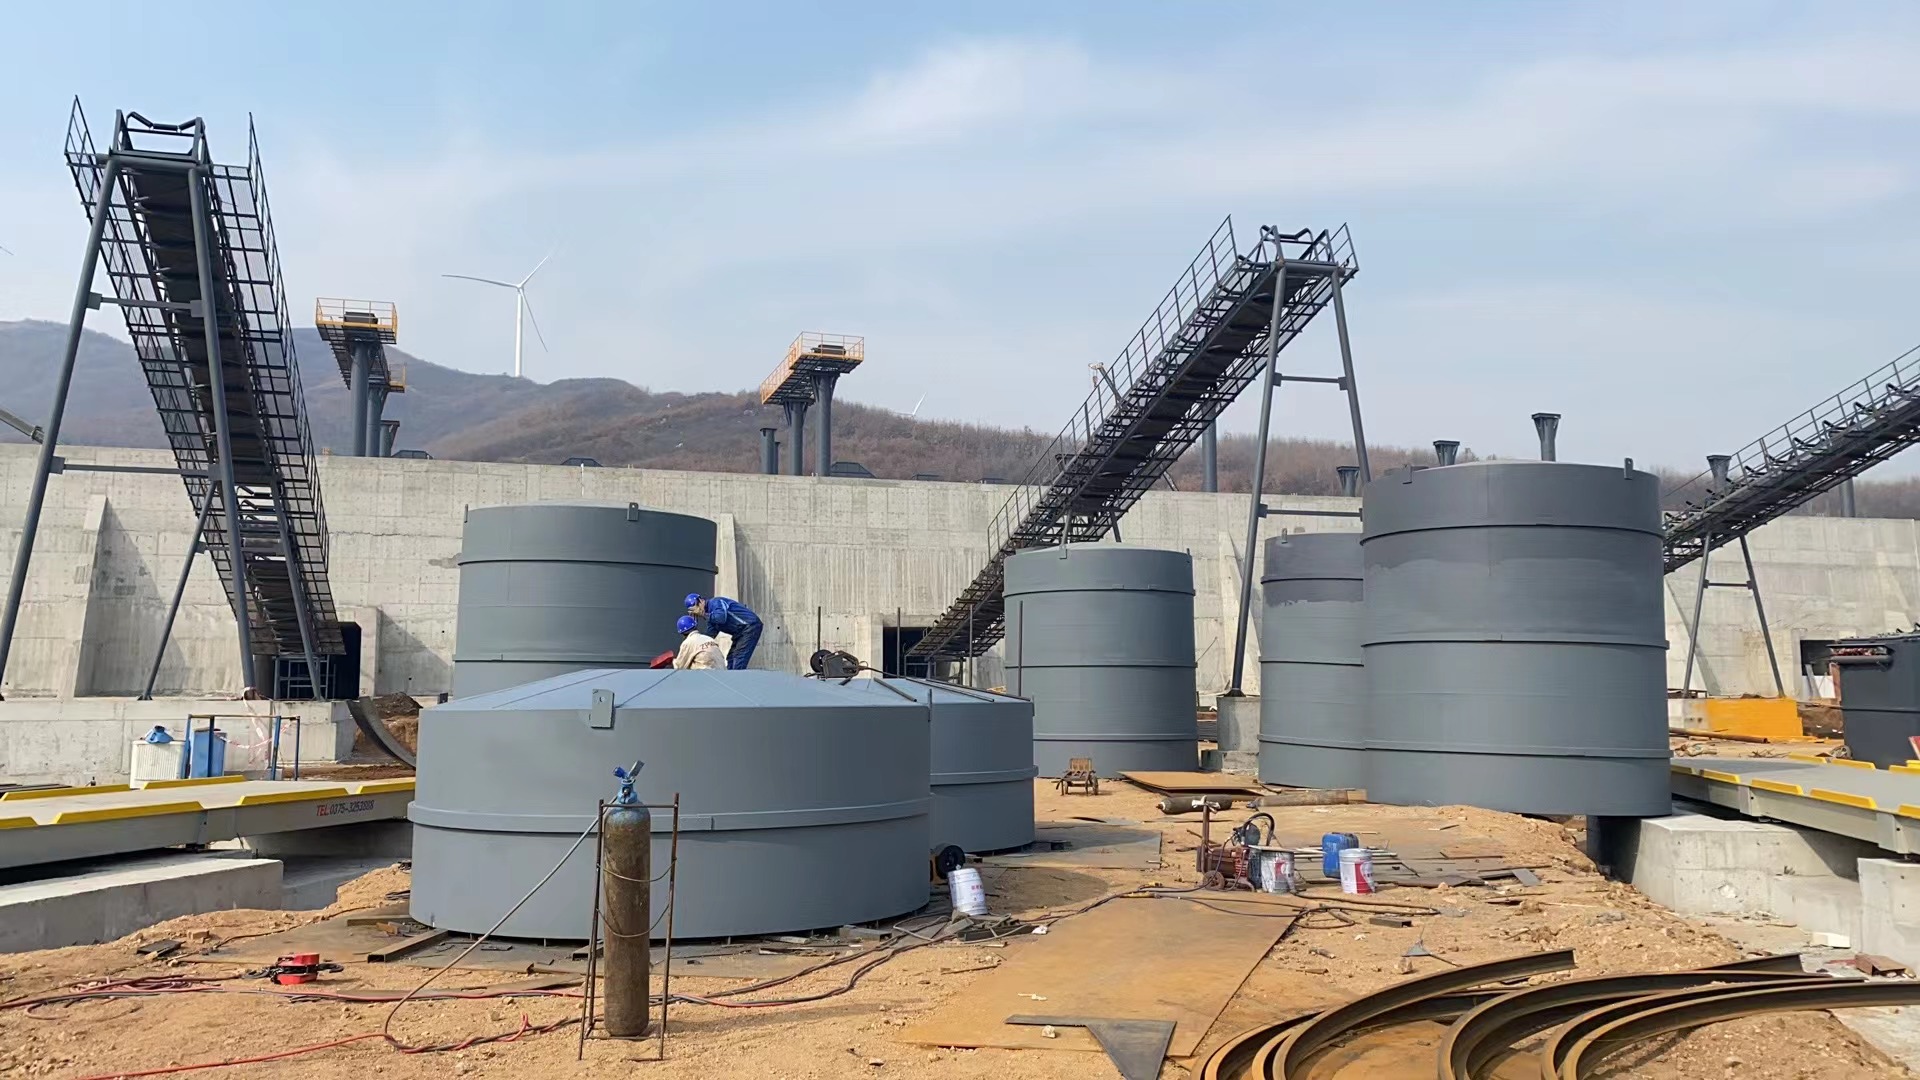 林芝骨料钢板仓河南项目大型骨料仓生产线进度